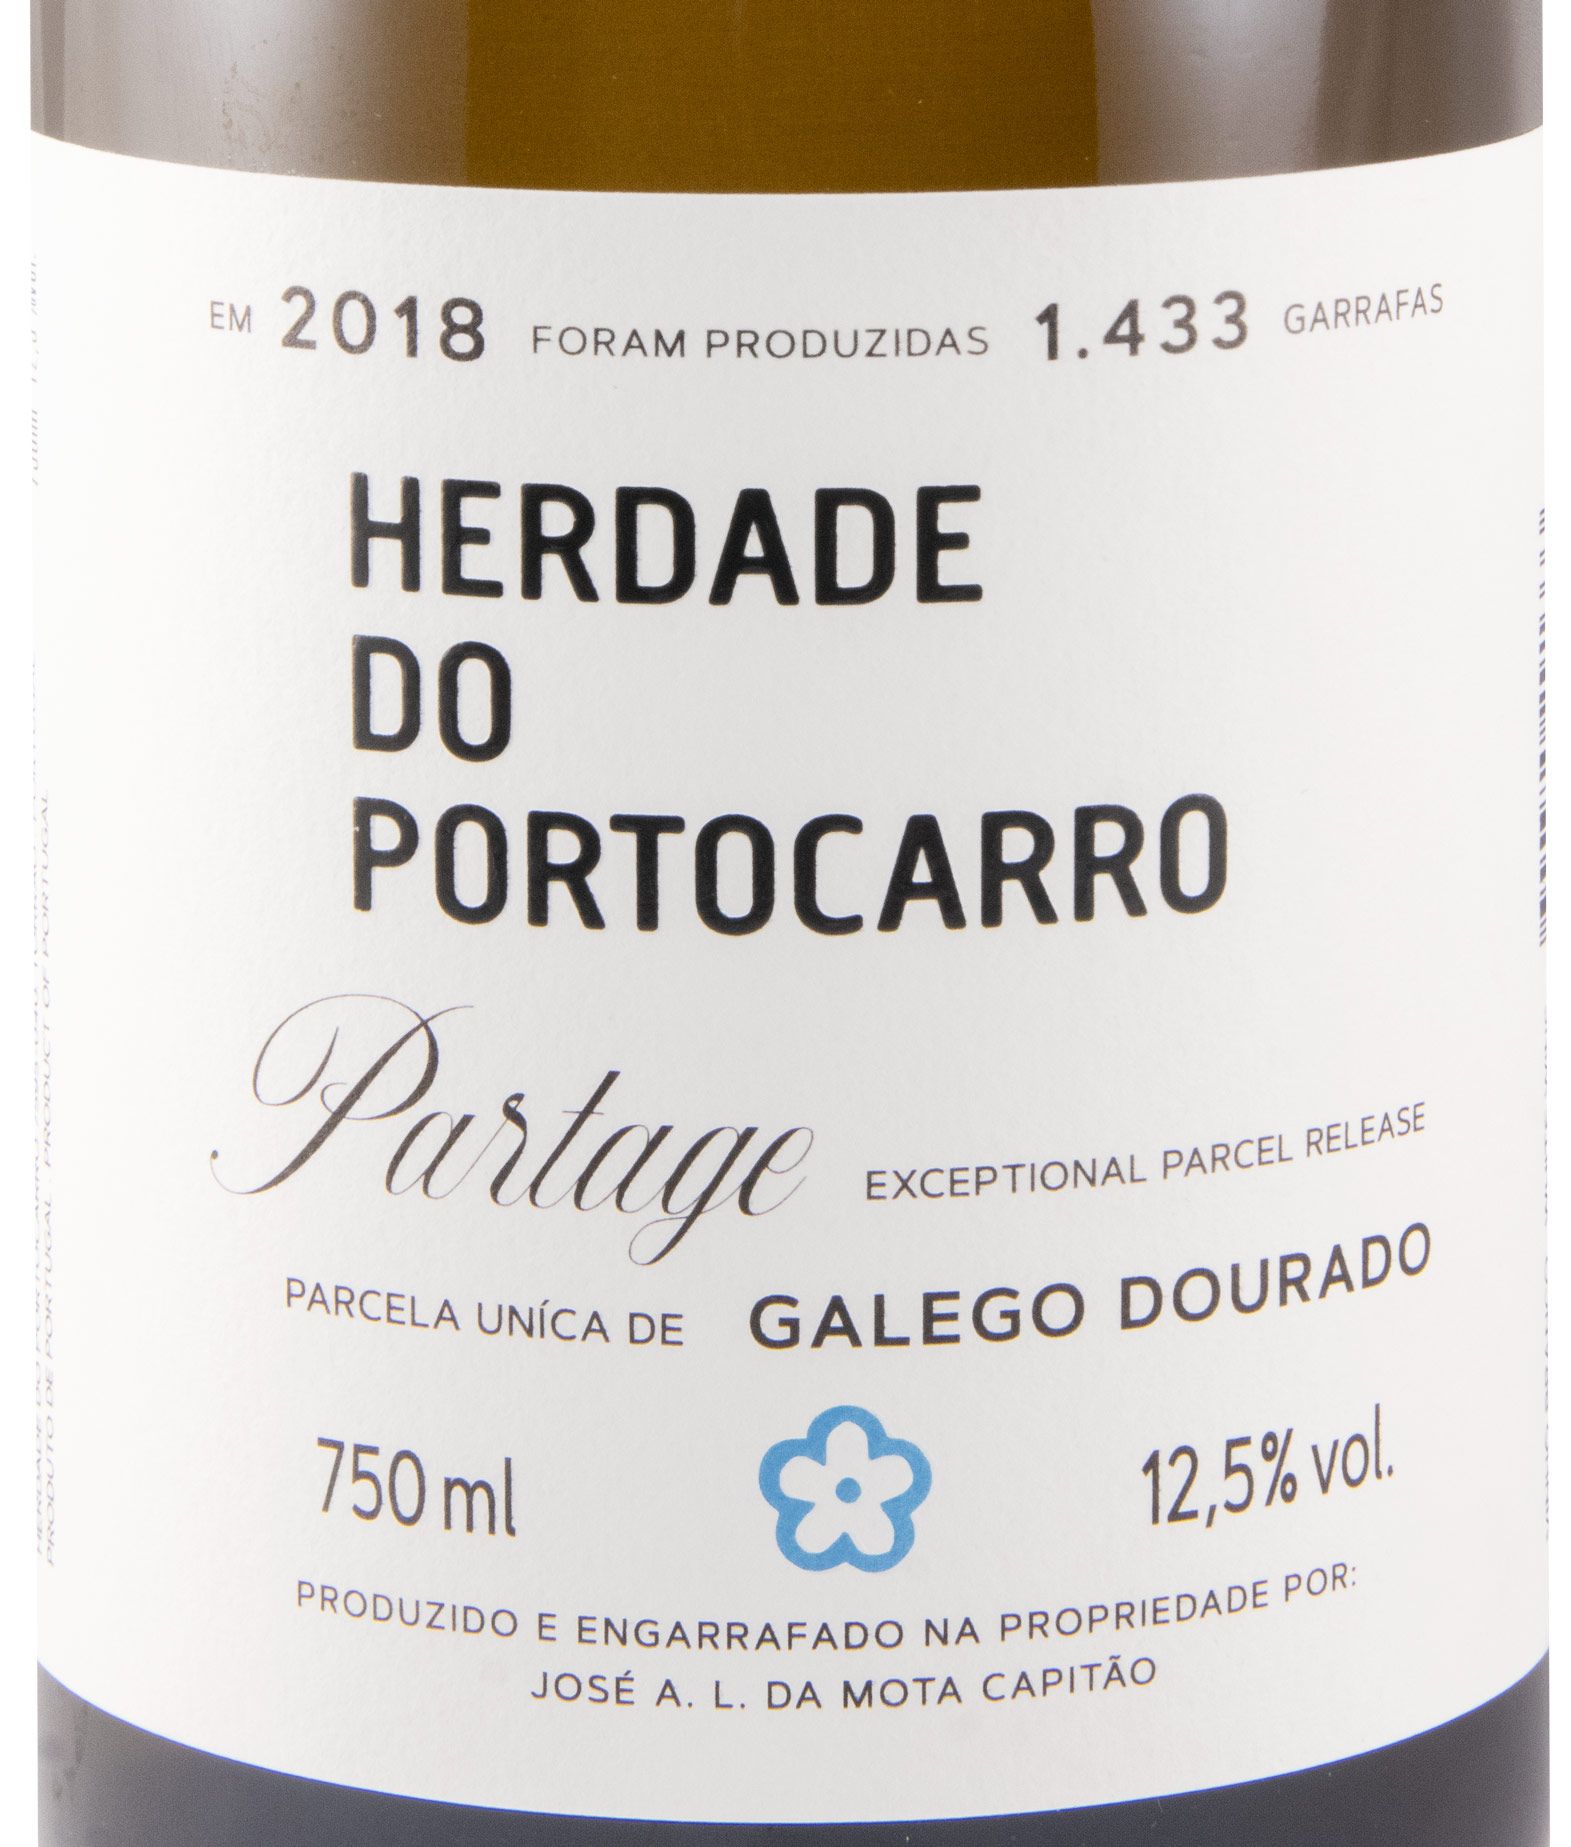 2018 Herdade do Portocarro Partage Galego Dourado white